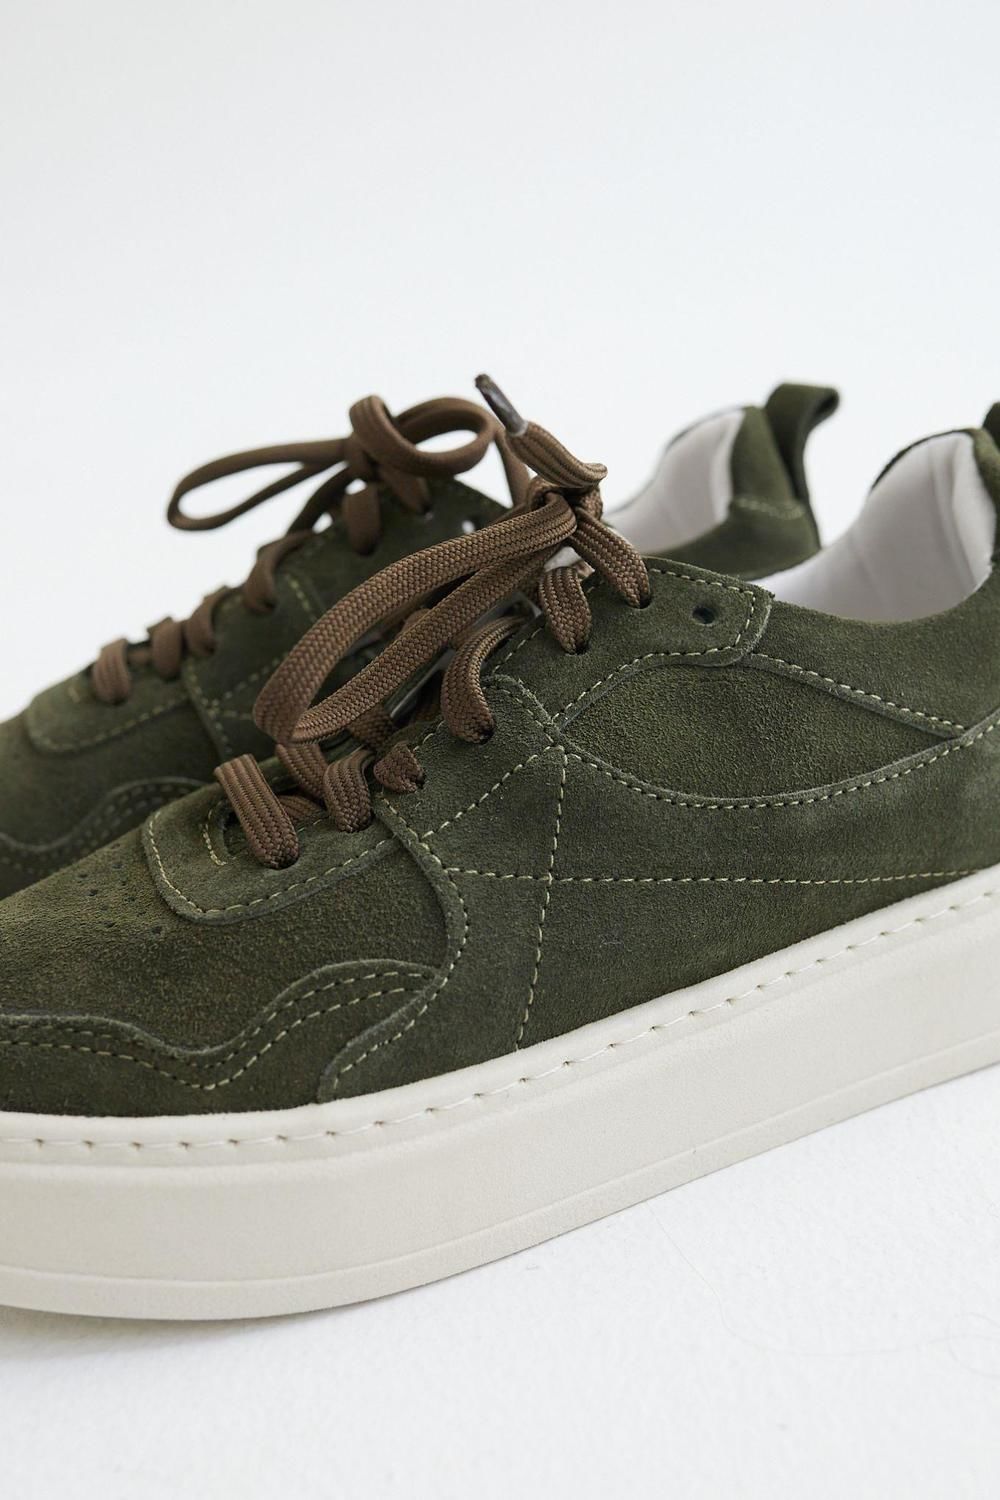 Sneakers Pul verde oliva 40